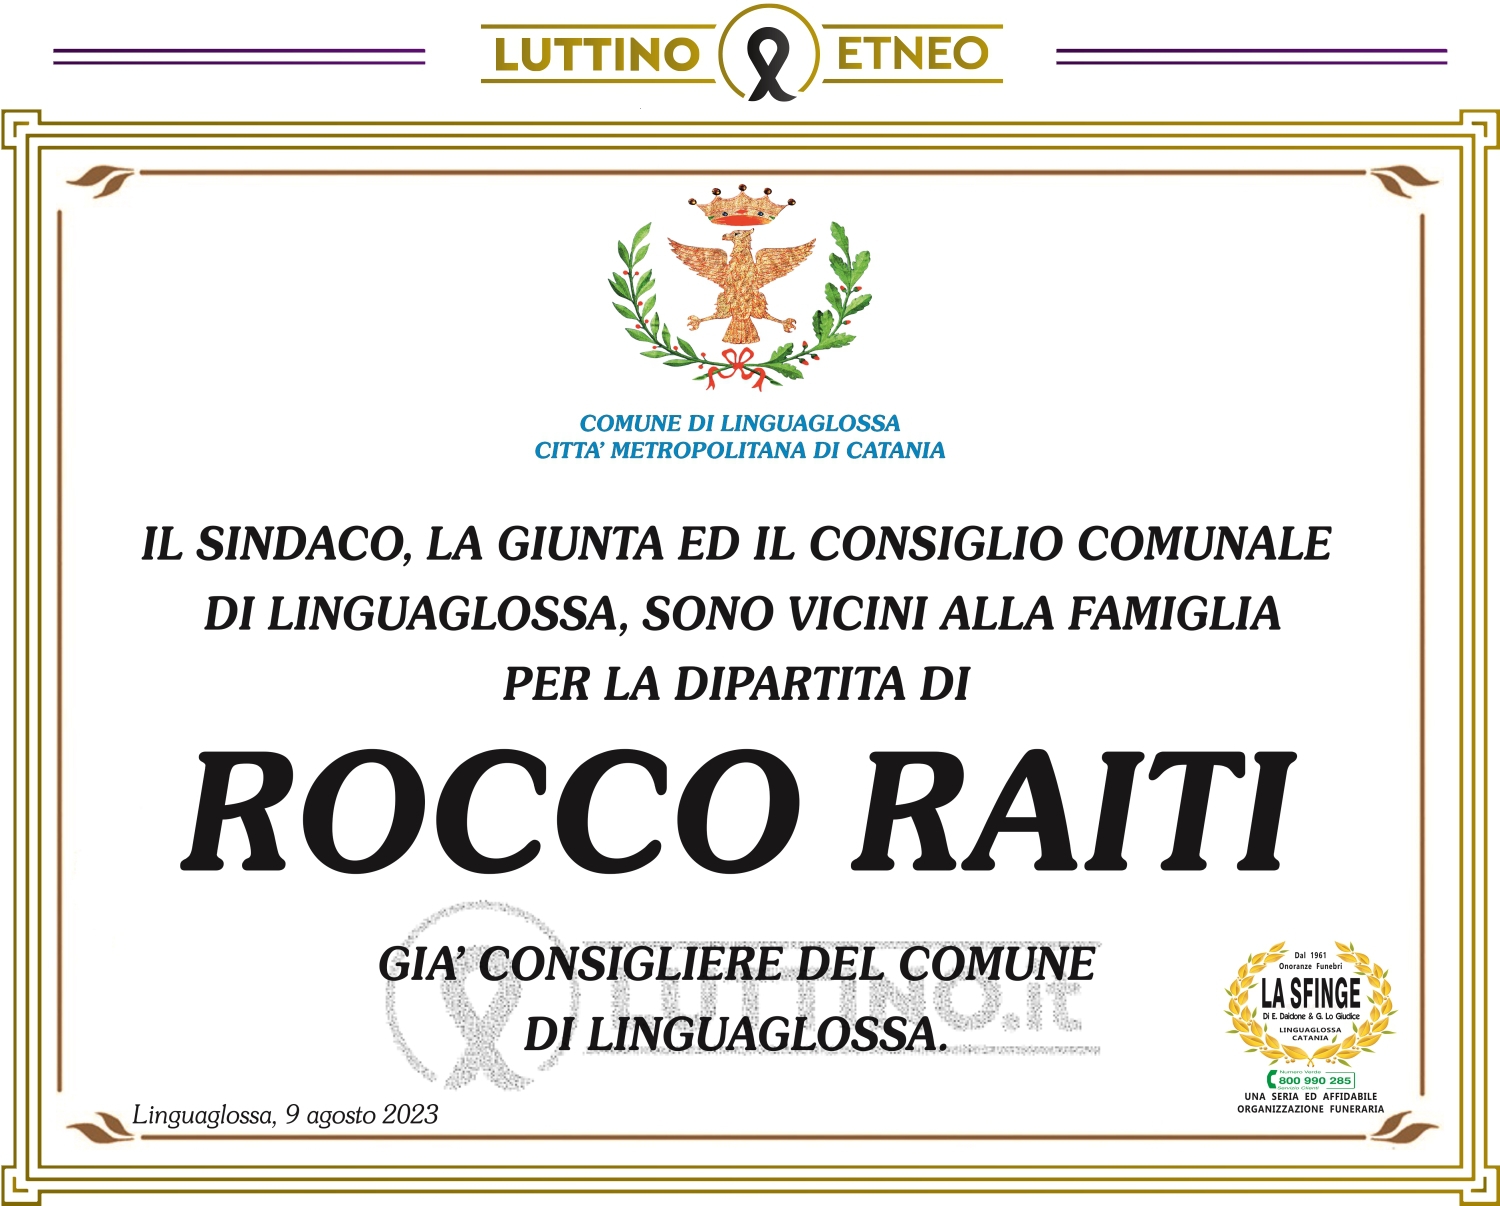 Rocco Raiti